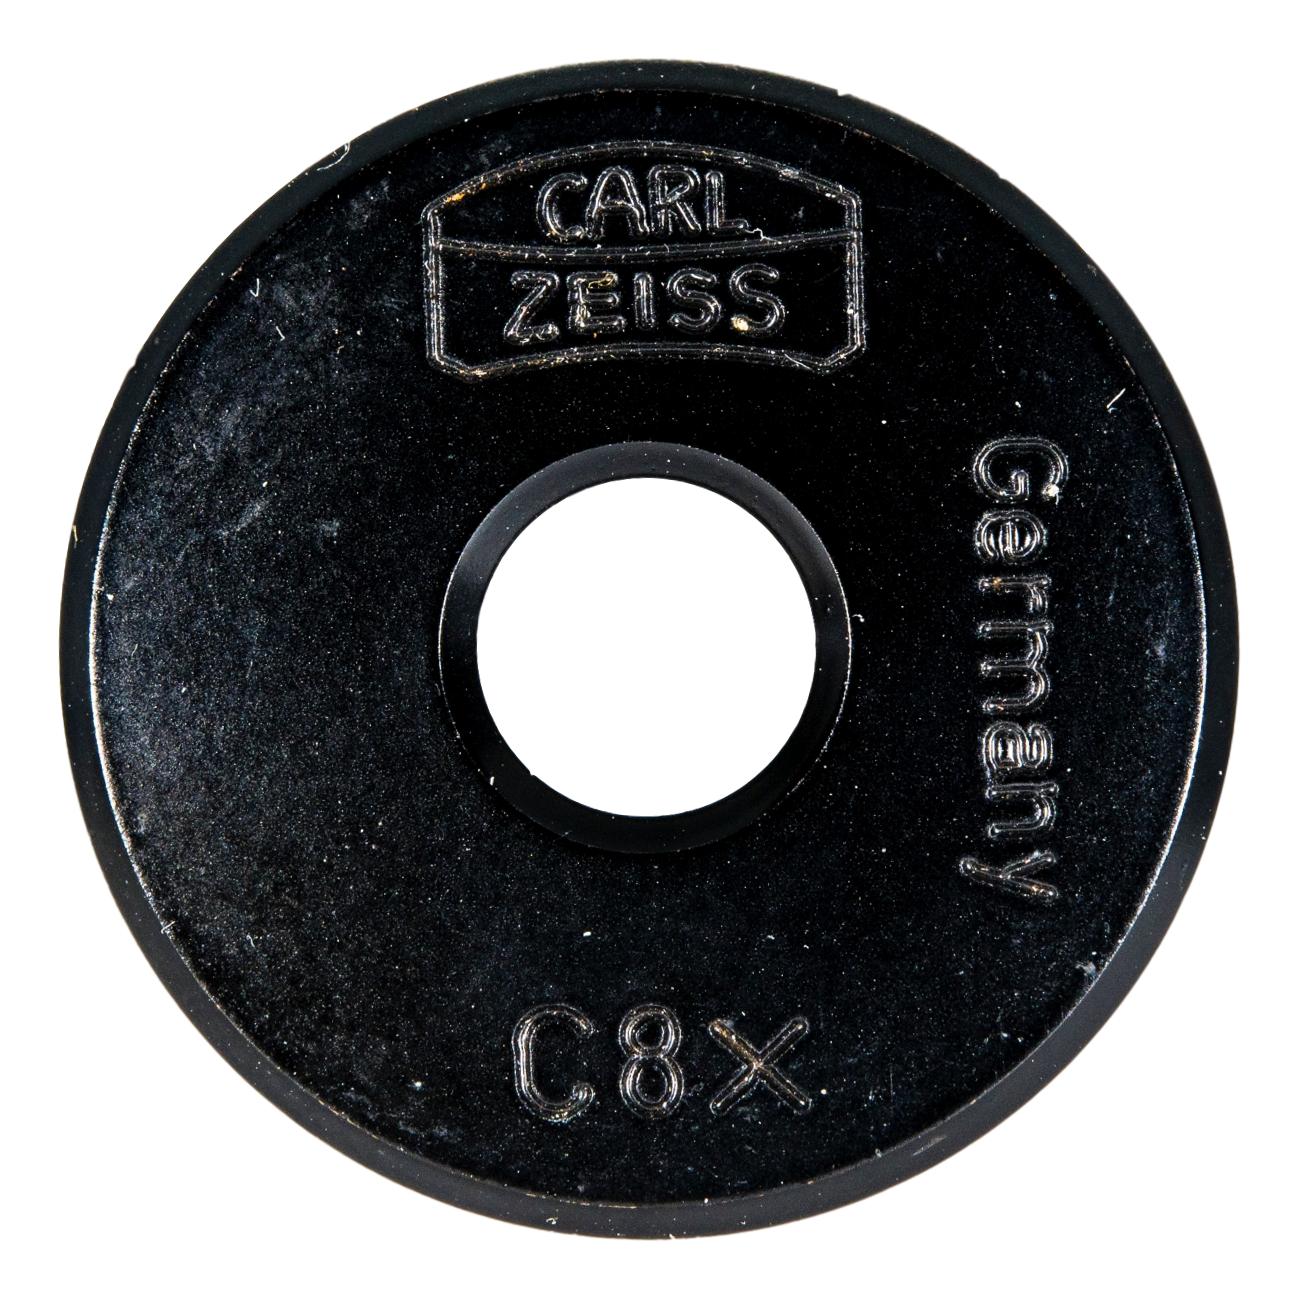 Zeiss C 8x Eyepiece